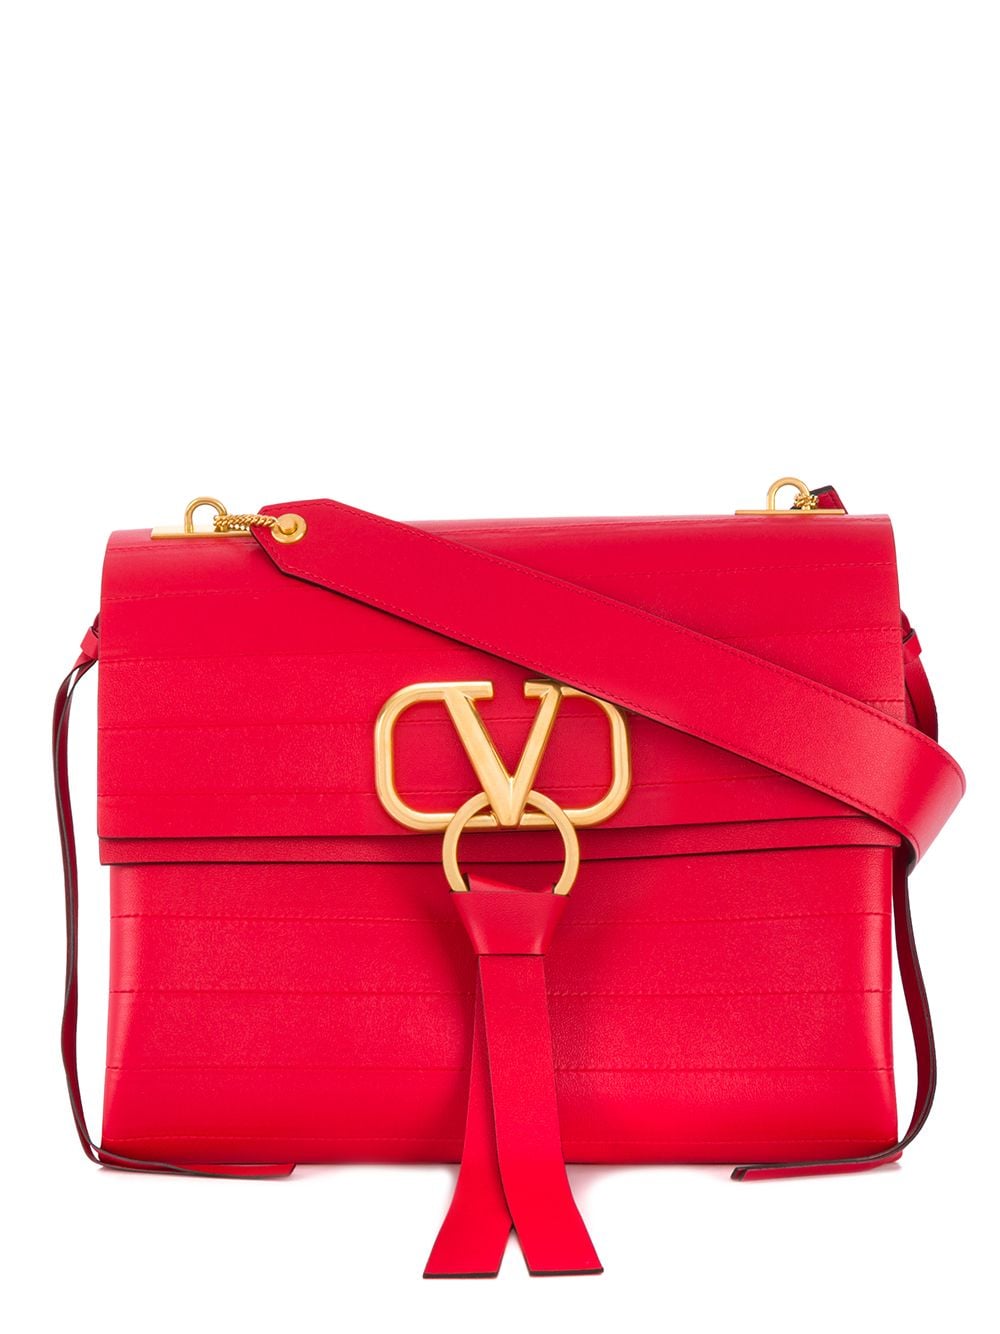 фото Valentino сумка на плечо valentino garavani с логотипом vring